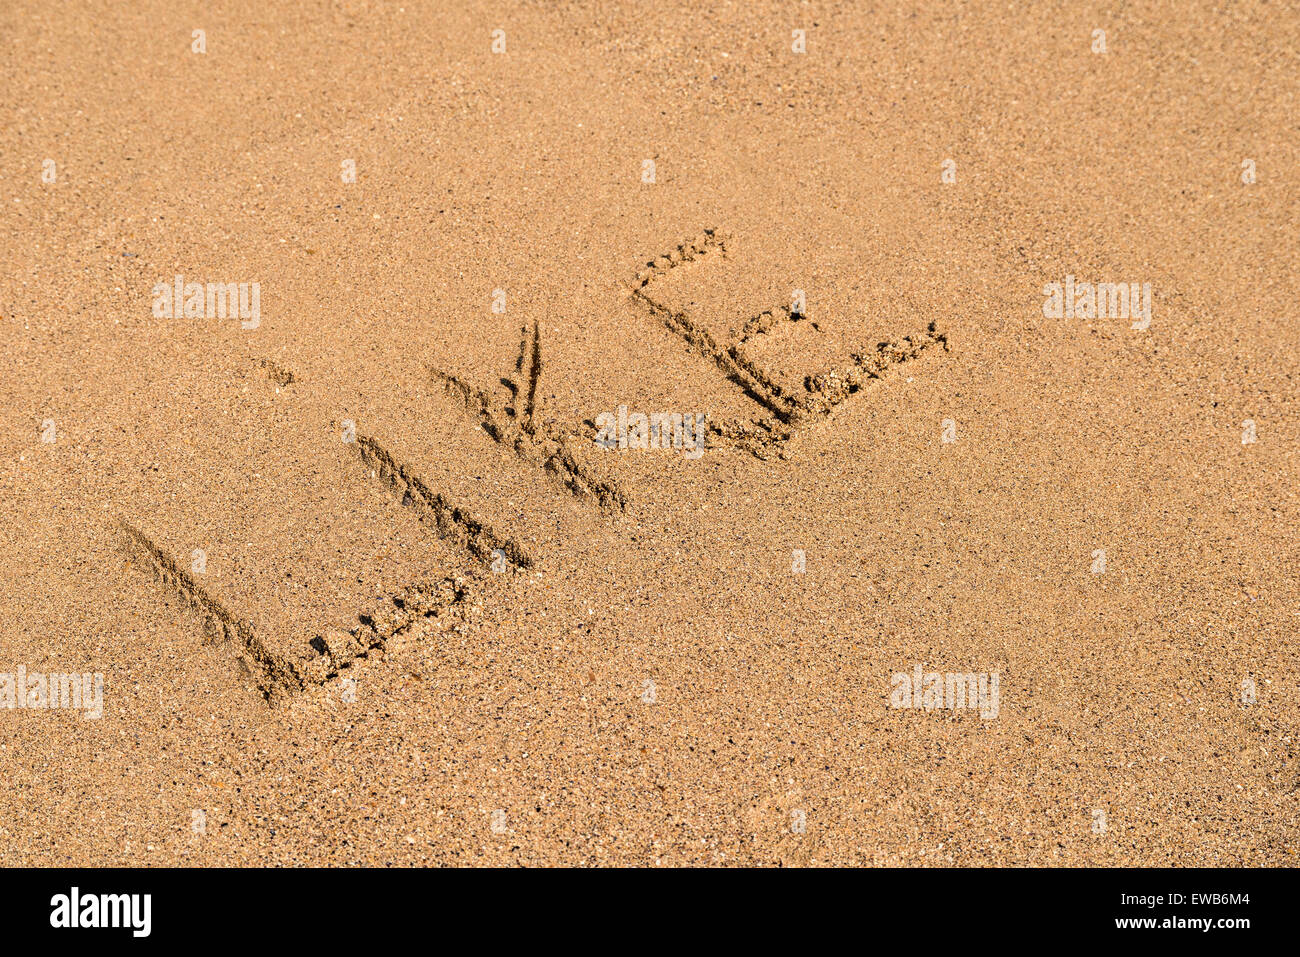 Come la parola scritta su estiva soleggiata spiaggia di sabbia Foto Stock